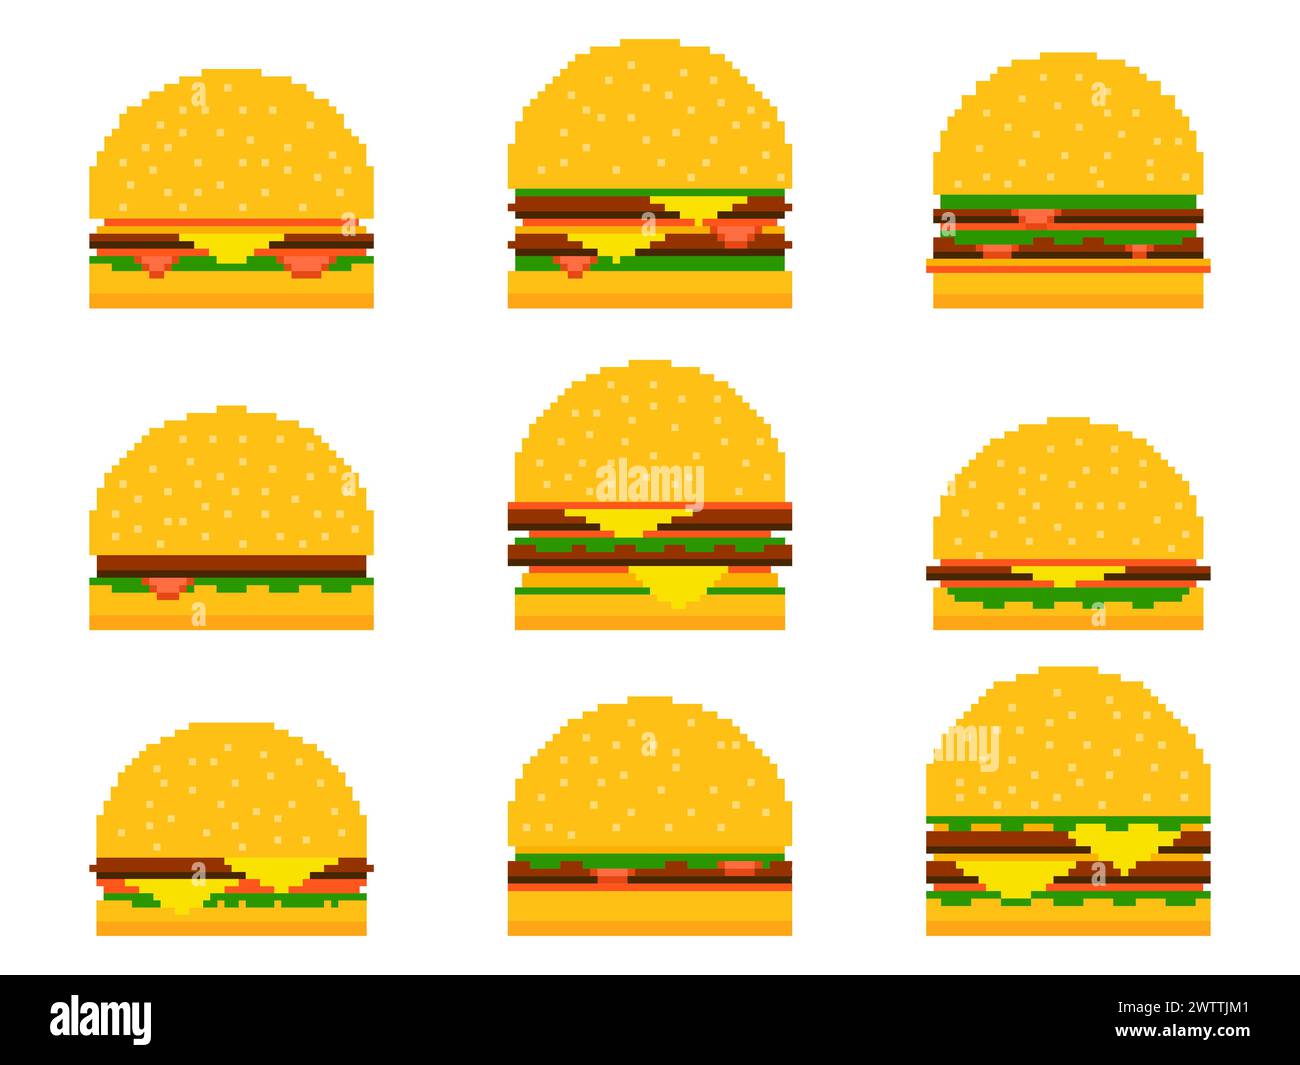 Icona di pixel Burger impostata isolata su sfondo bianco. cheeseburger a 8 bit con due cotolette e formaggio. Collezione di icone di cheeseburger e hamburger in Illustrazione Vettoriale